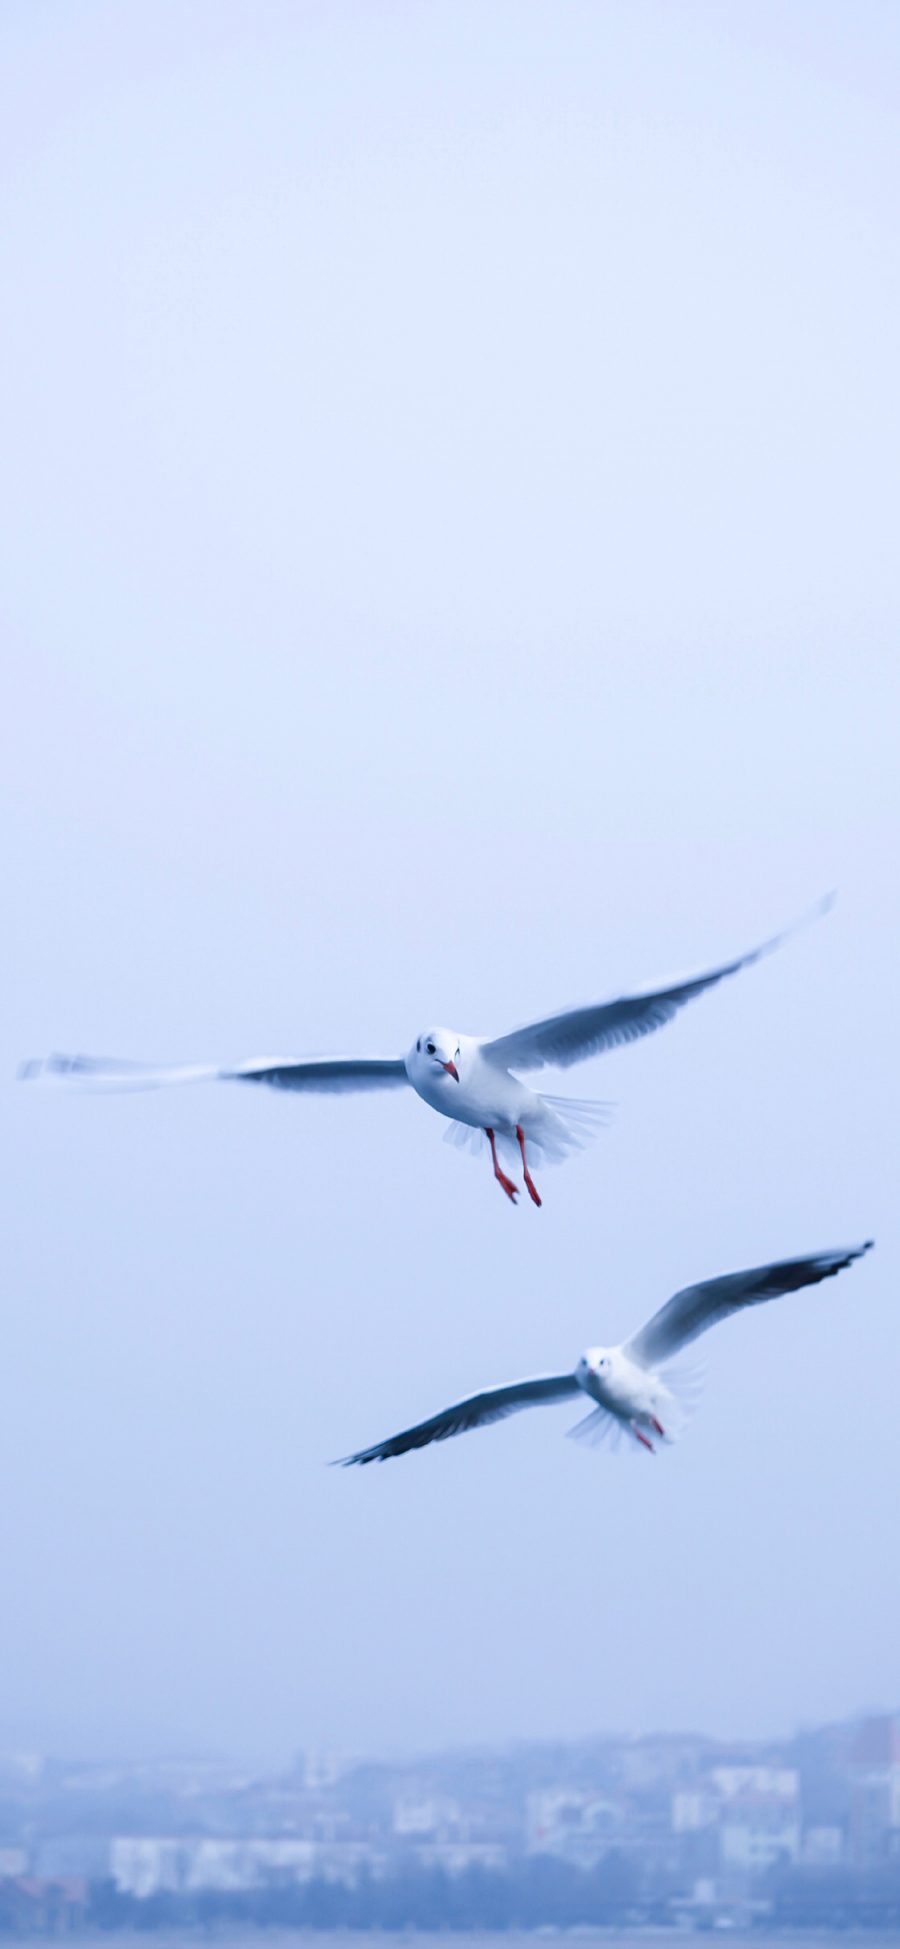 [2436×1125]海鸥 鸟 飞翔 翅膀 苹果手机壁纸图片